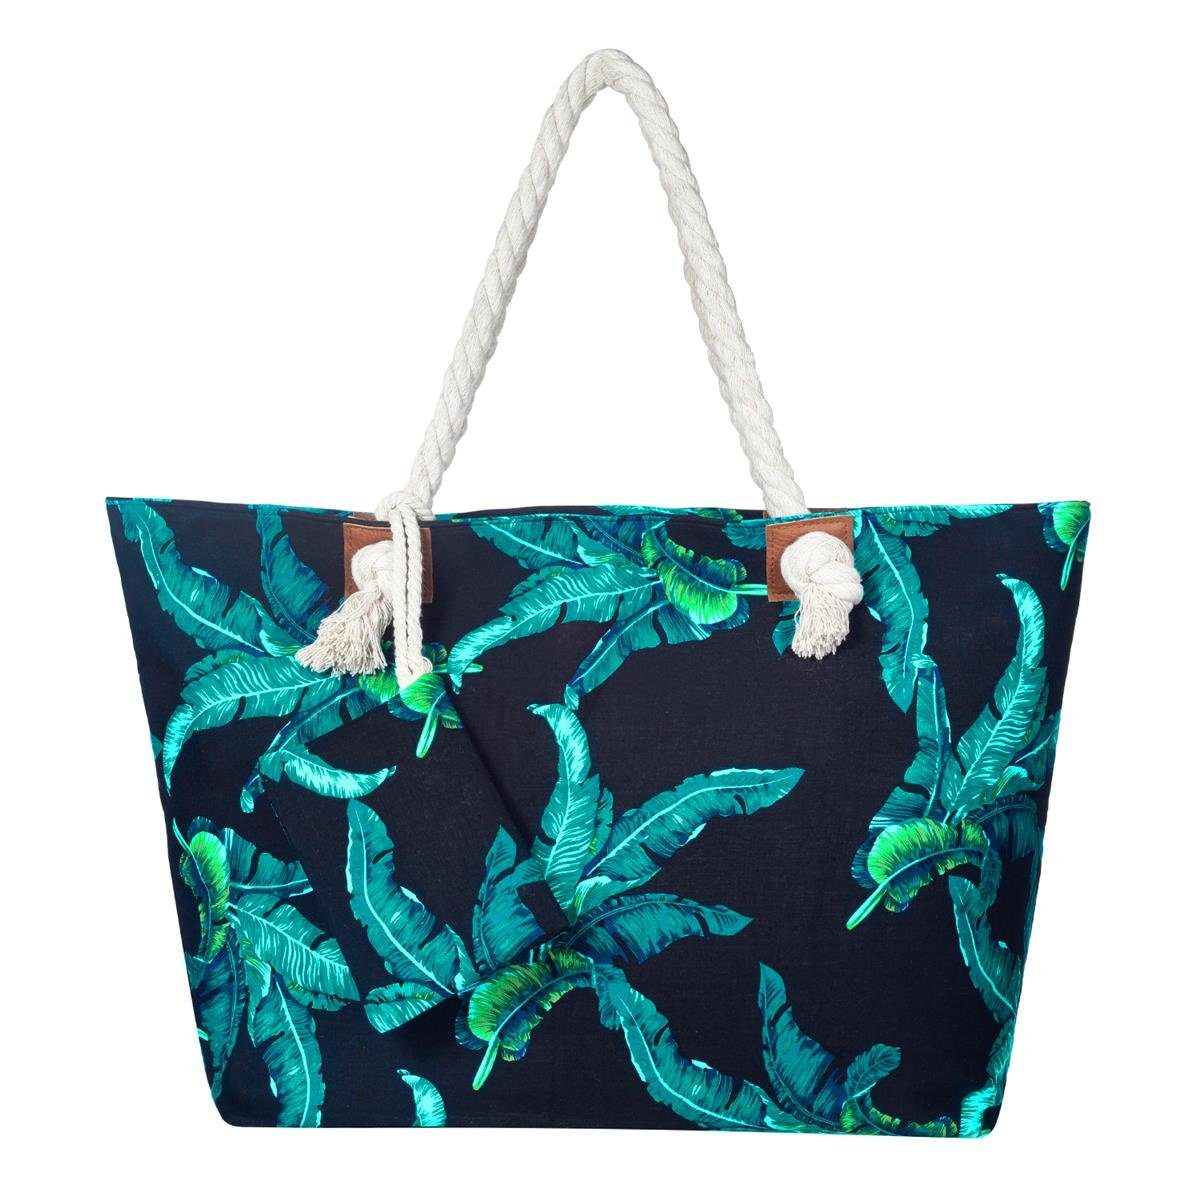 DonDon Strandtasche Shopper Schultertasche Beach Style (2-tlg), Große Strandtasche, mit Reißverschluss, tolle Motive blätter Blau